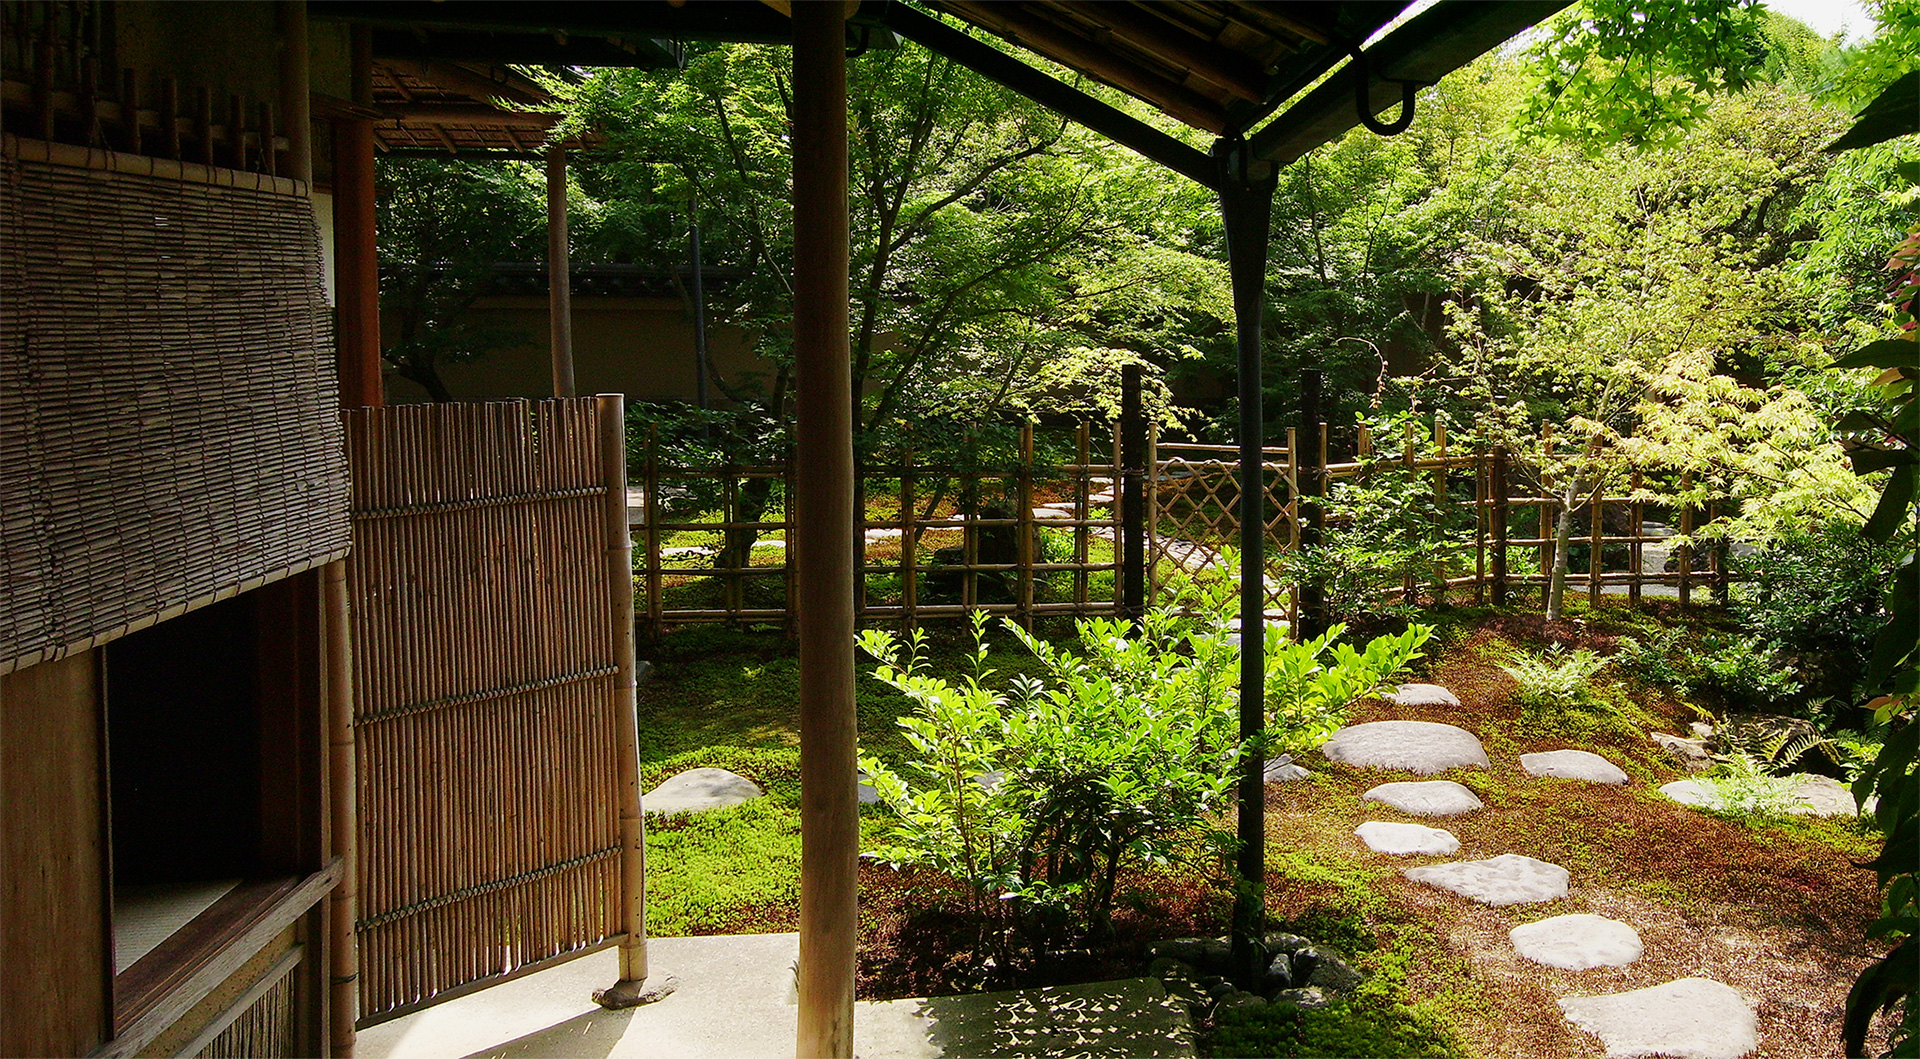 Japanese tea house entryway.